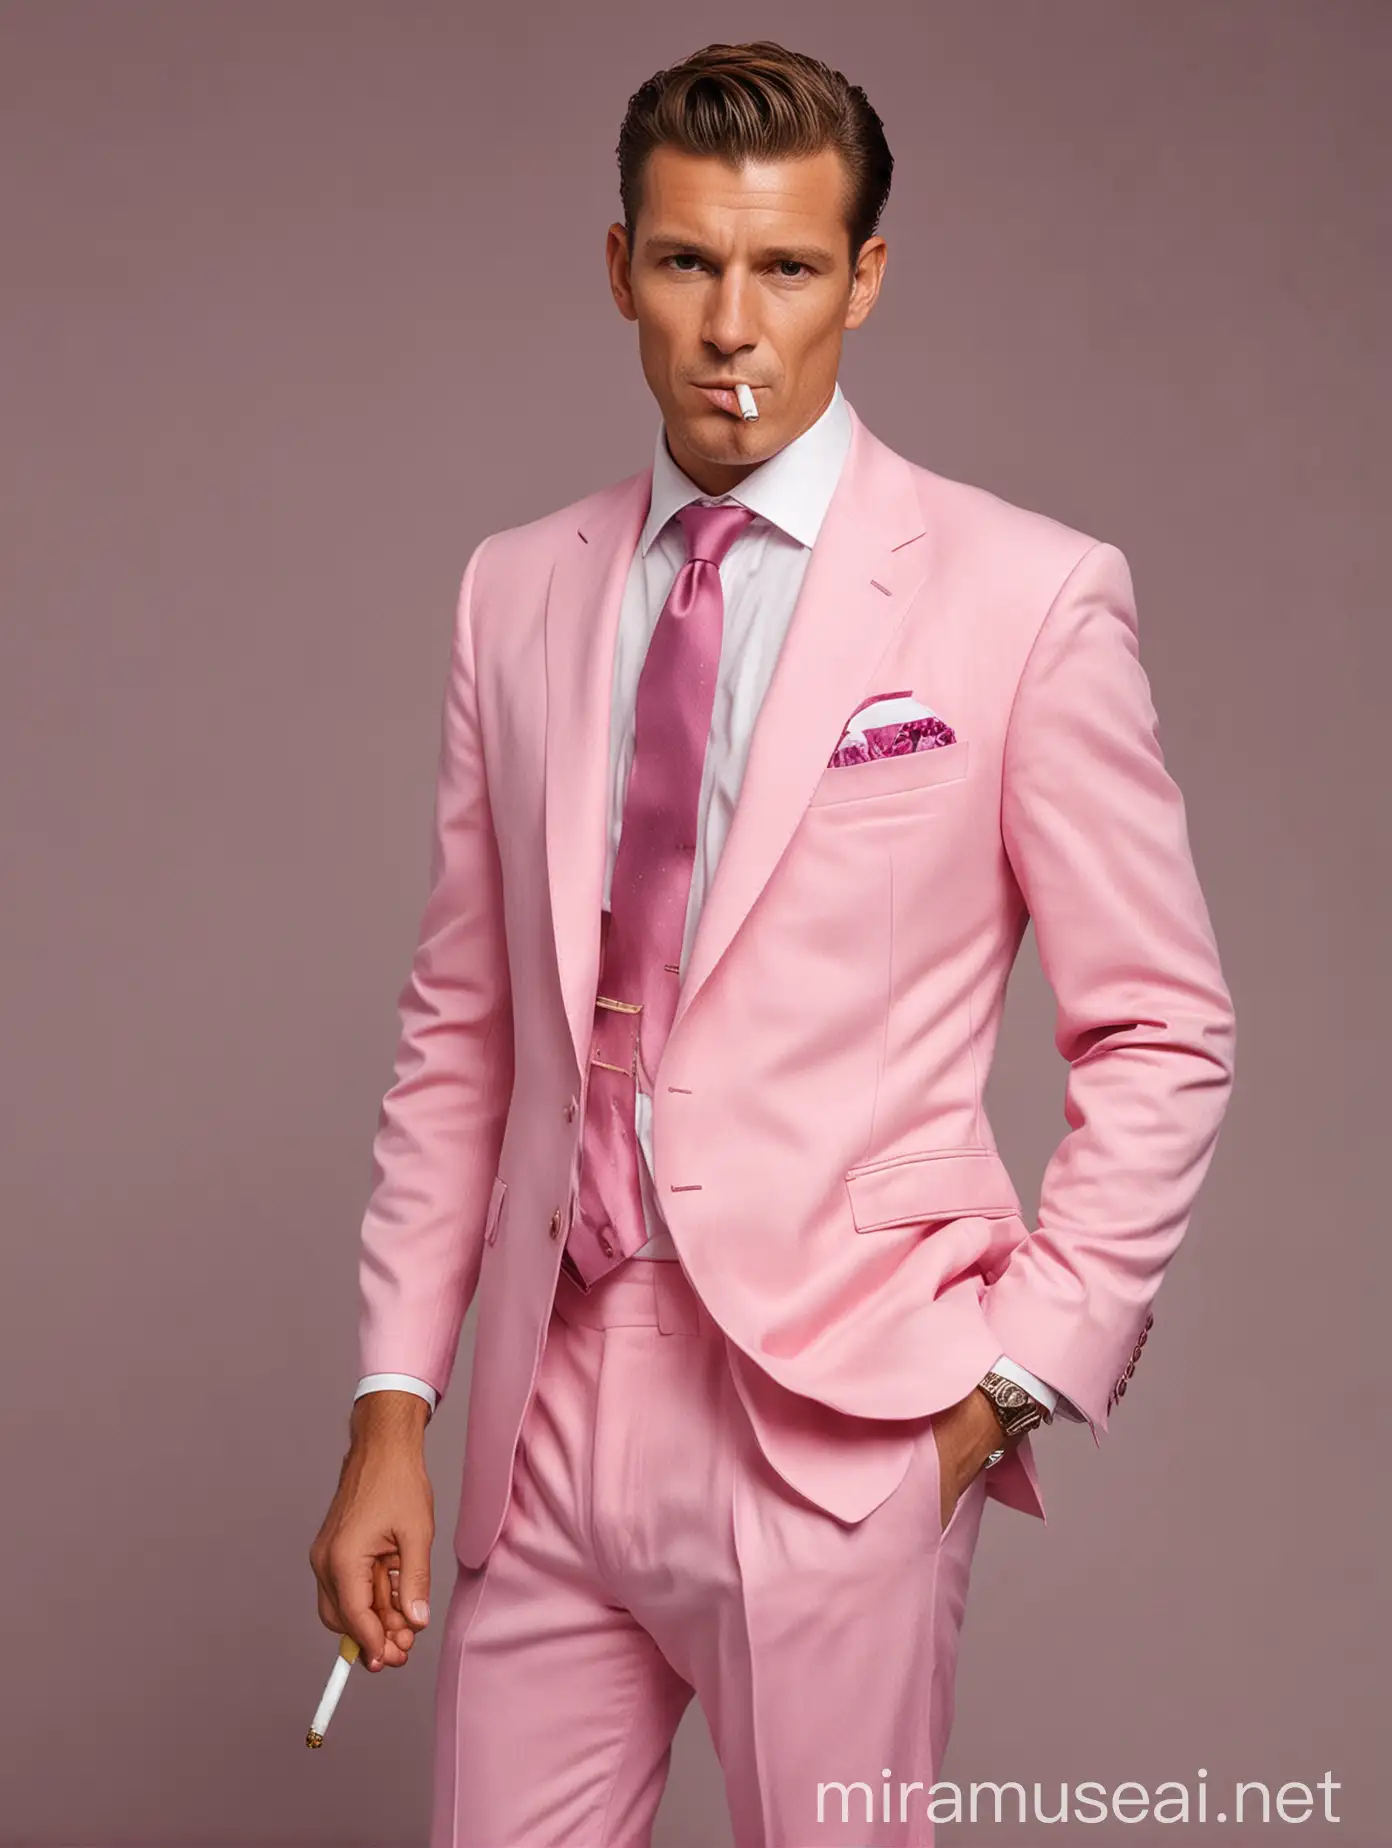 Мужчина лет 40, короткими волосами зачесанными назад, с сигаретой в руке. Одет в темно розовый пиджак, светло-розовую рубашку и такой же галстук. Белые брюки и туфли. 